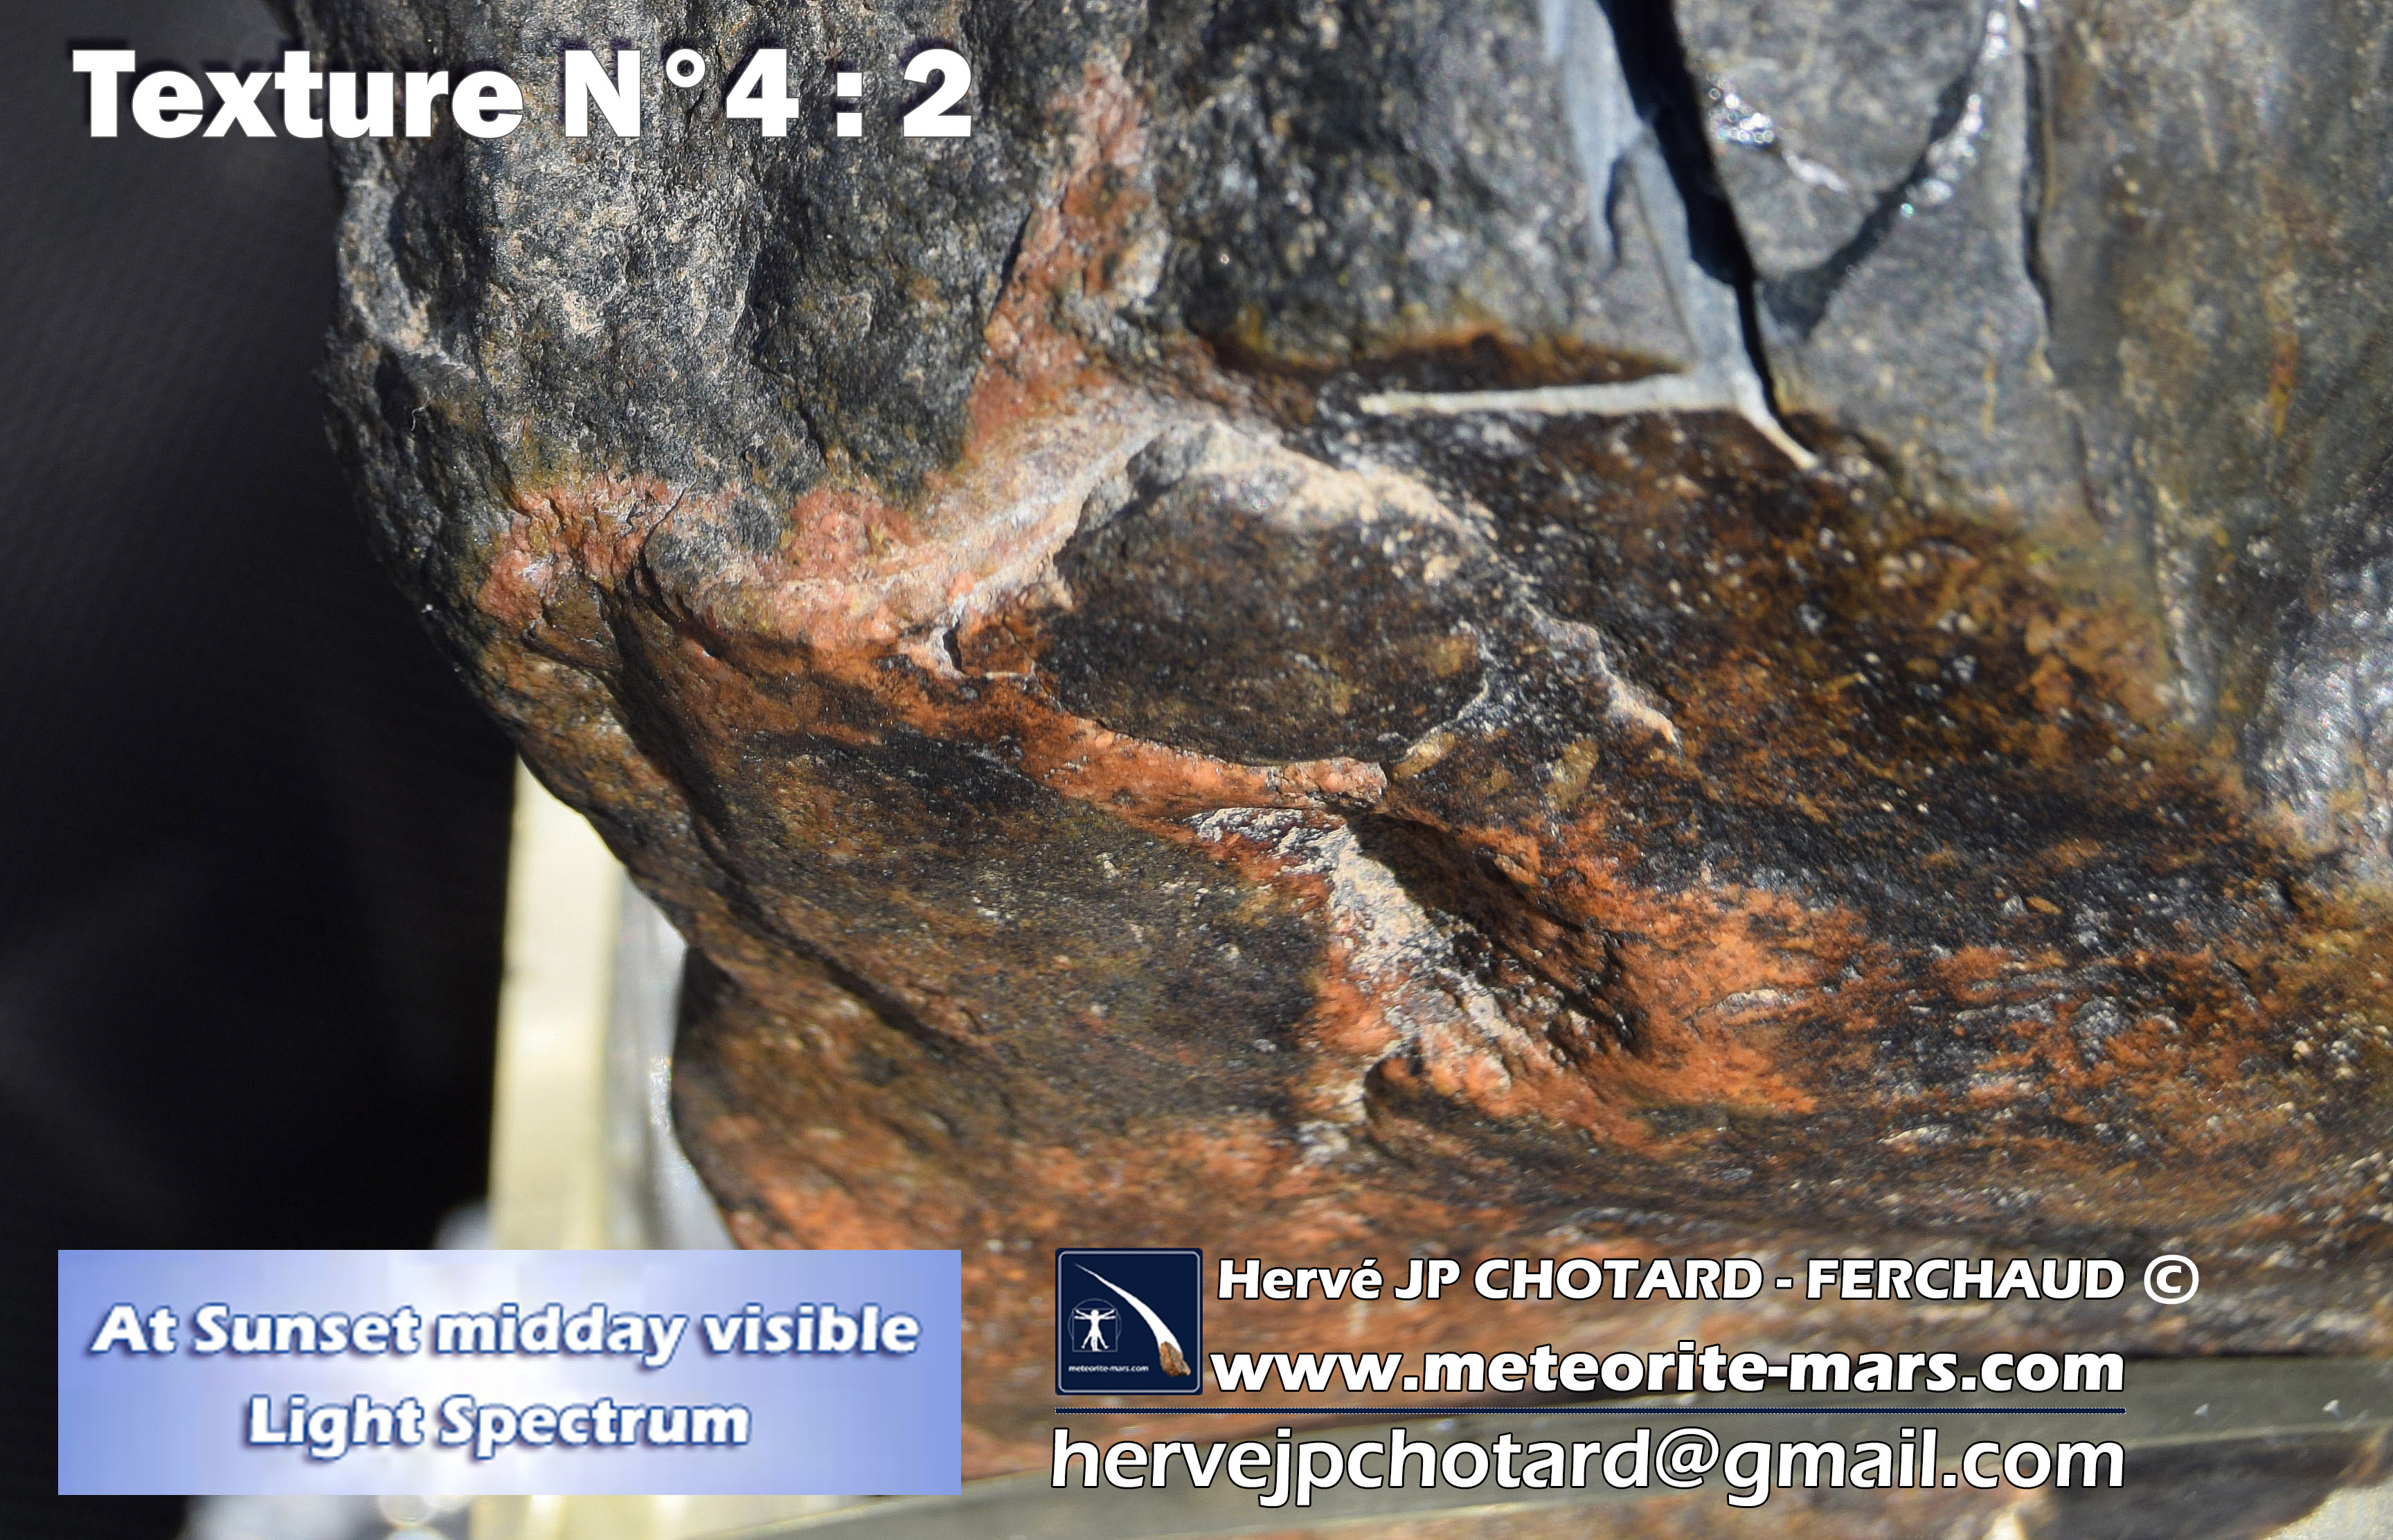 Texture N 4-2 meteorite chizé de mars